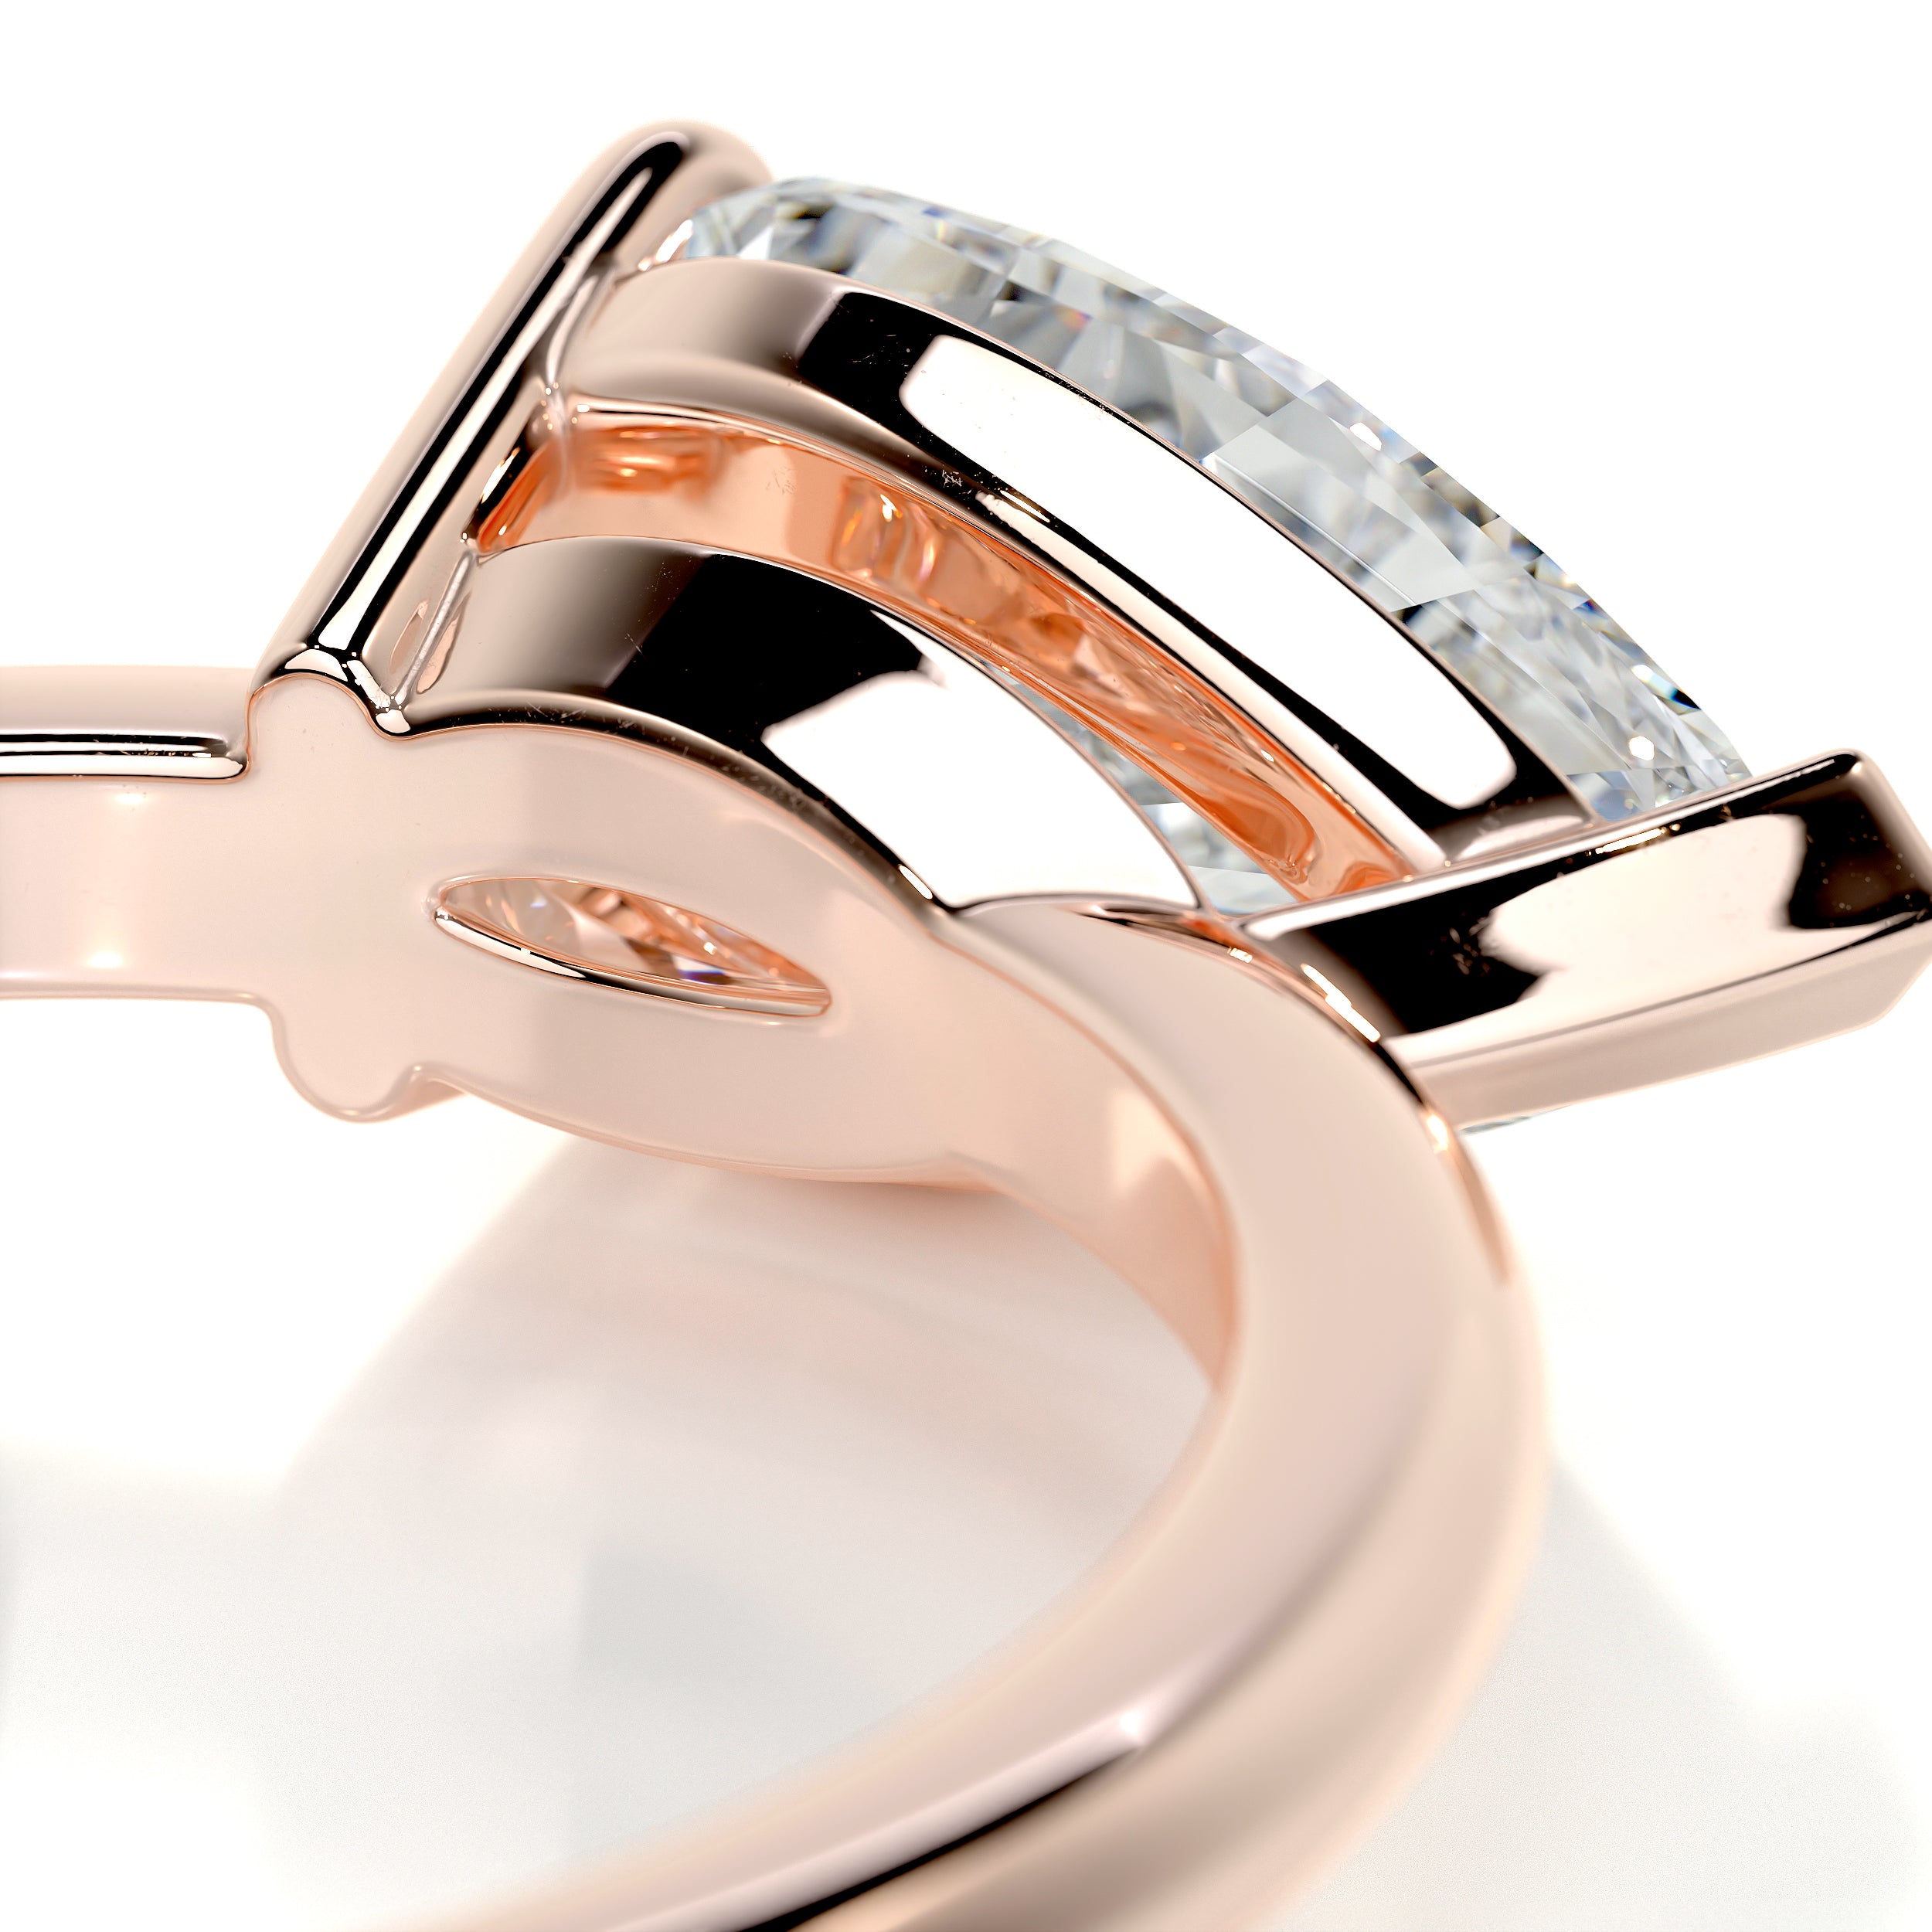 Miriam Diamond Engagement Ring   (1 Carat) -14K Rose Gold